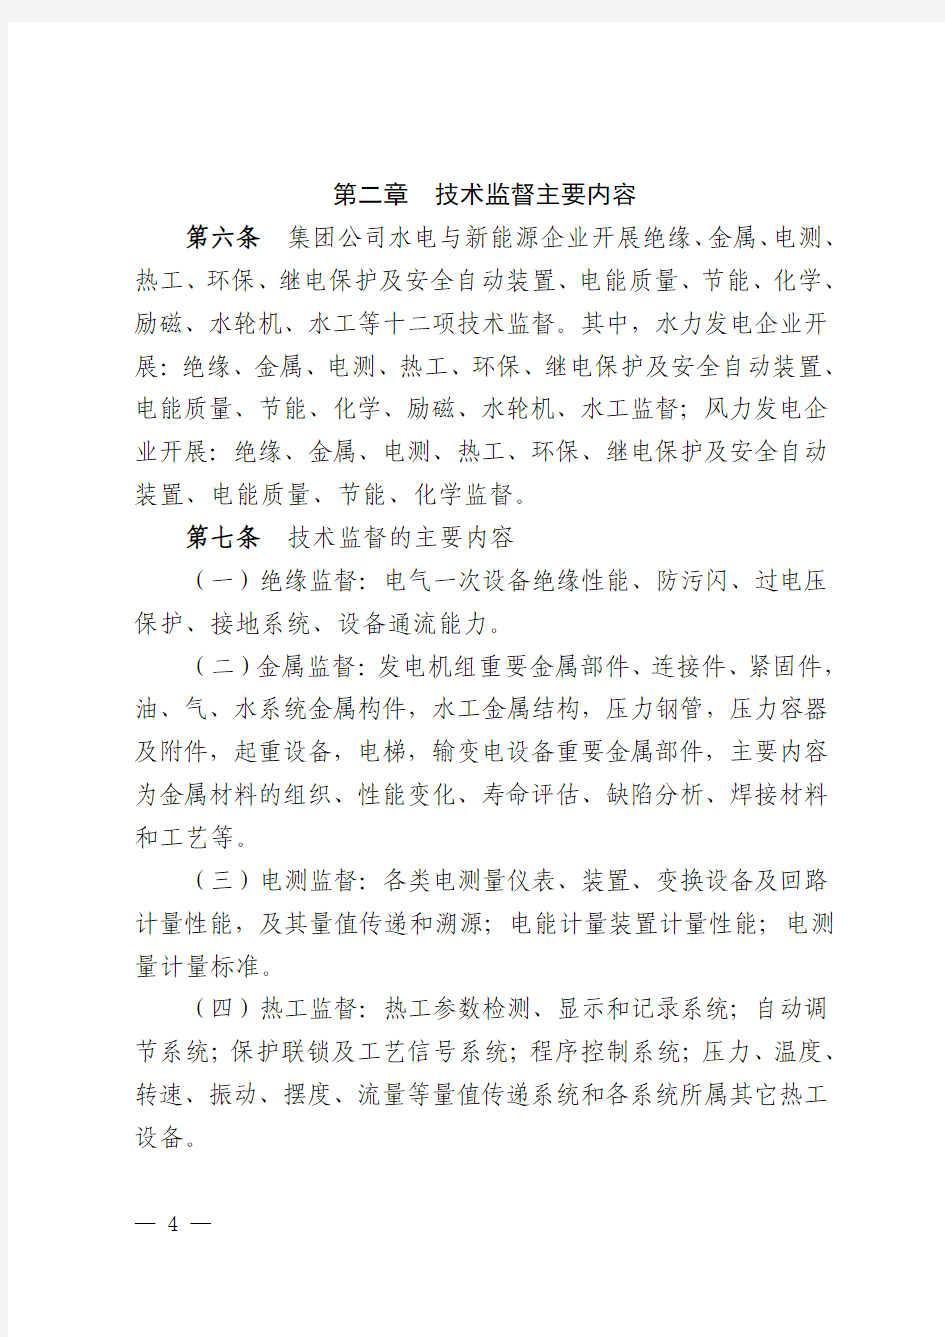 中国华电集团公司水电与新能源技术监督管理办法(试行)